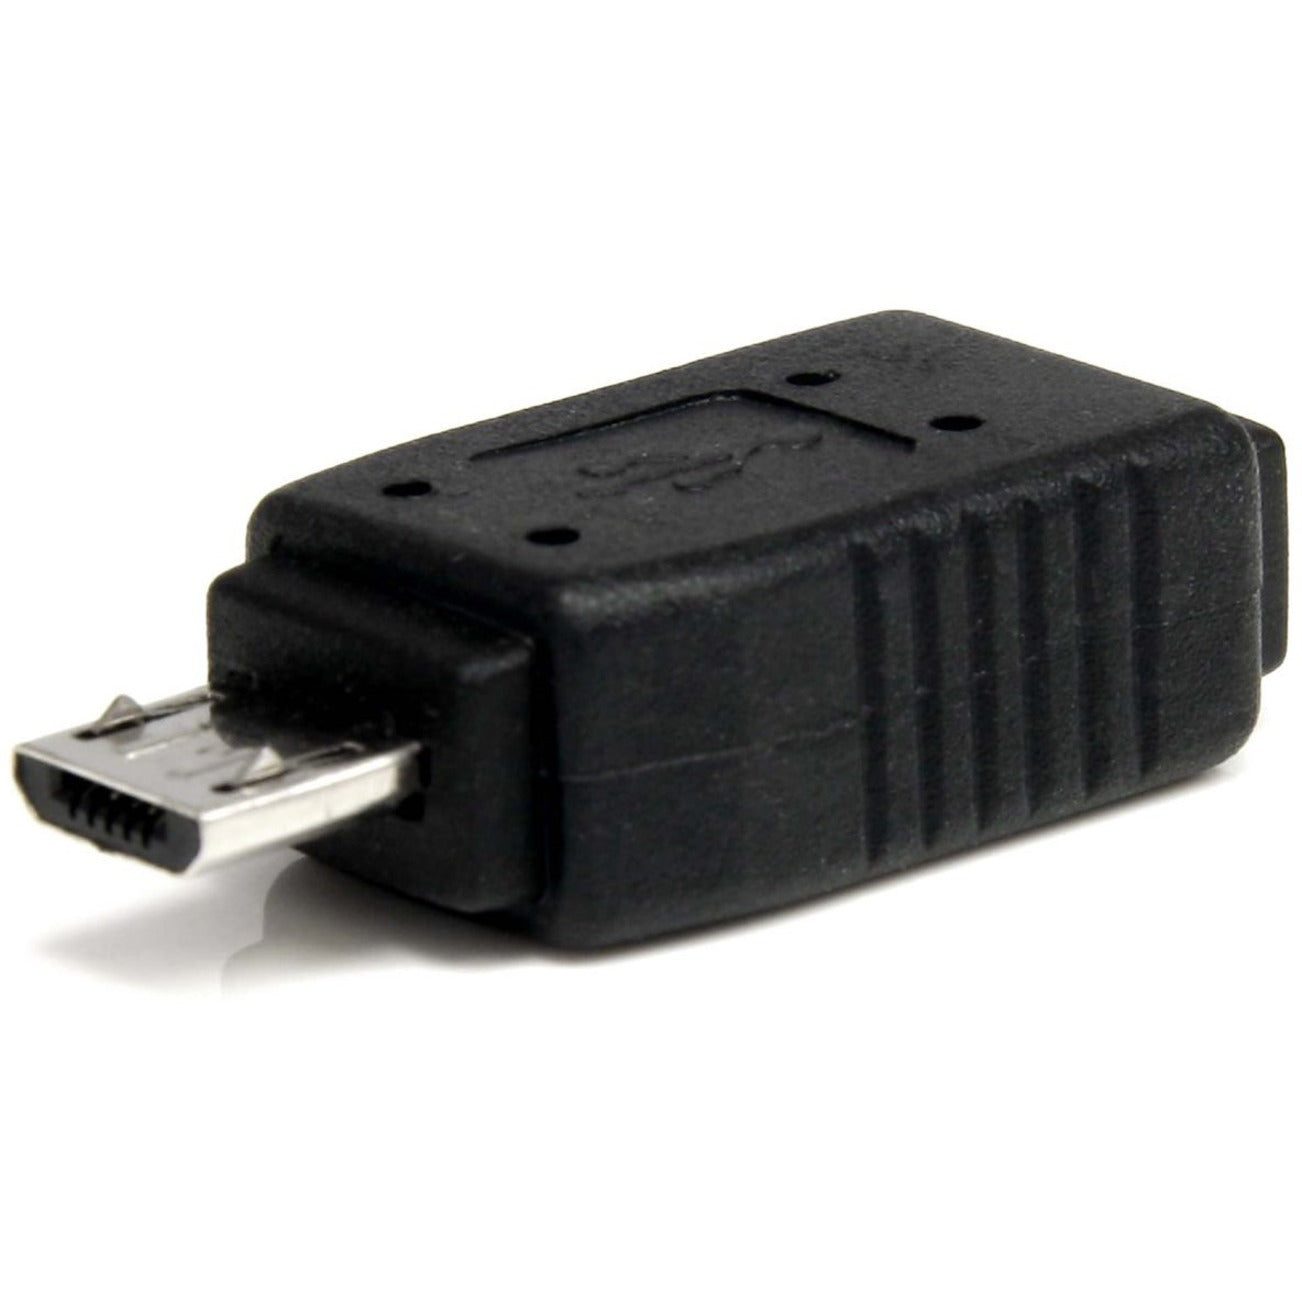 StarTech.com UUSBMUSBMF USB 2.0 Adapter - Micro USB (M) - Mini USB (F), Charging Support [Discontinued]